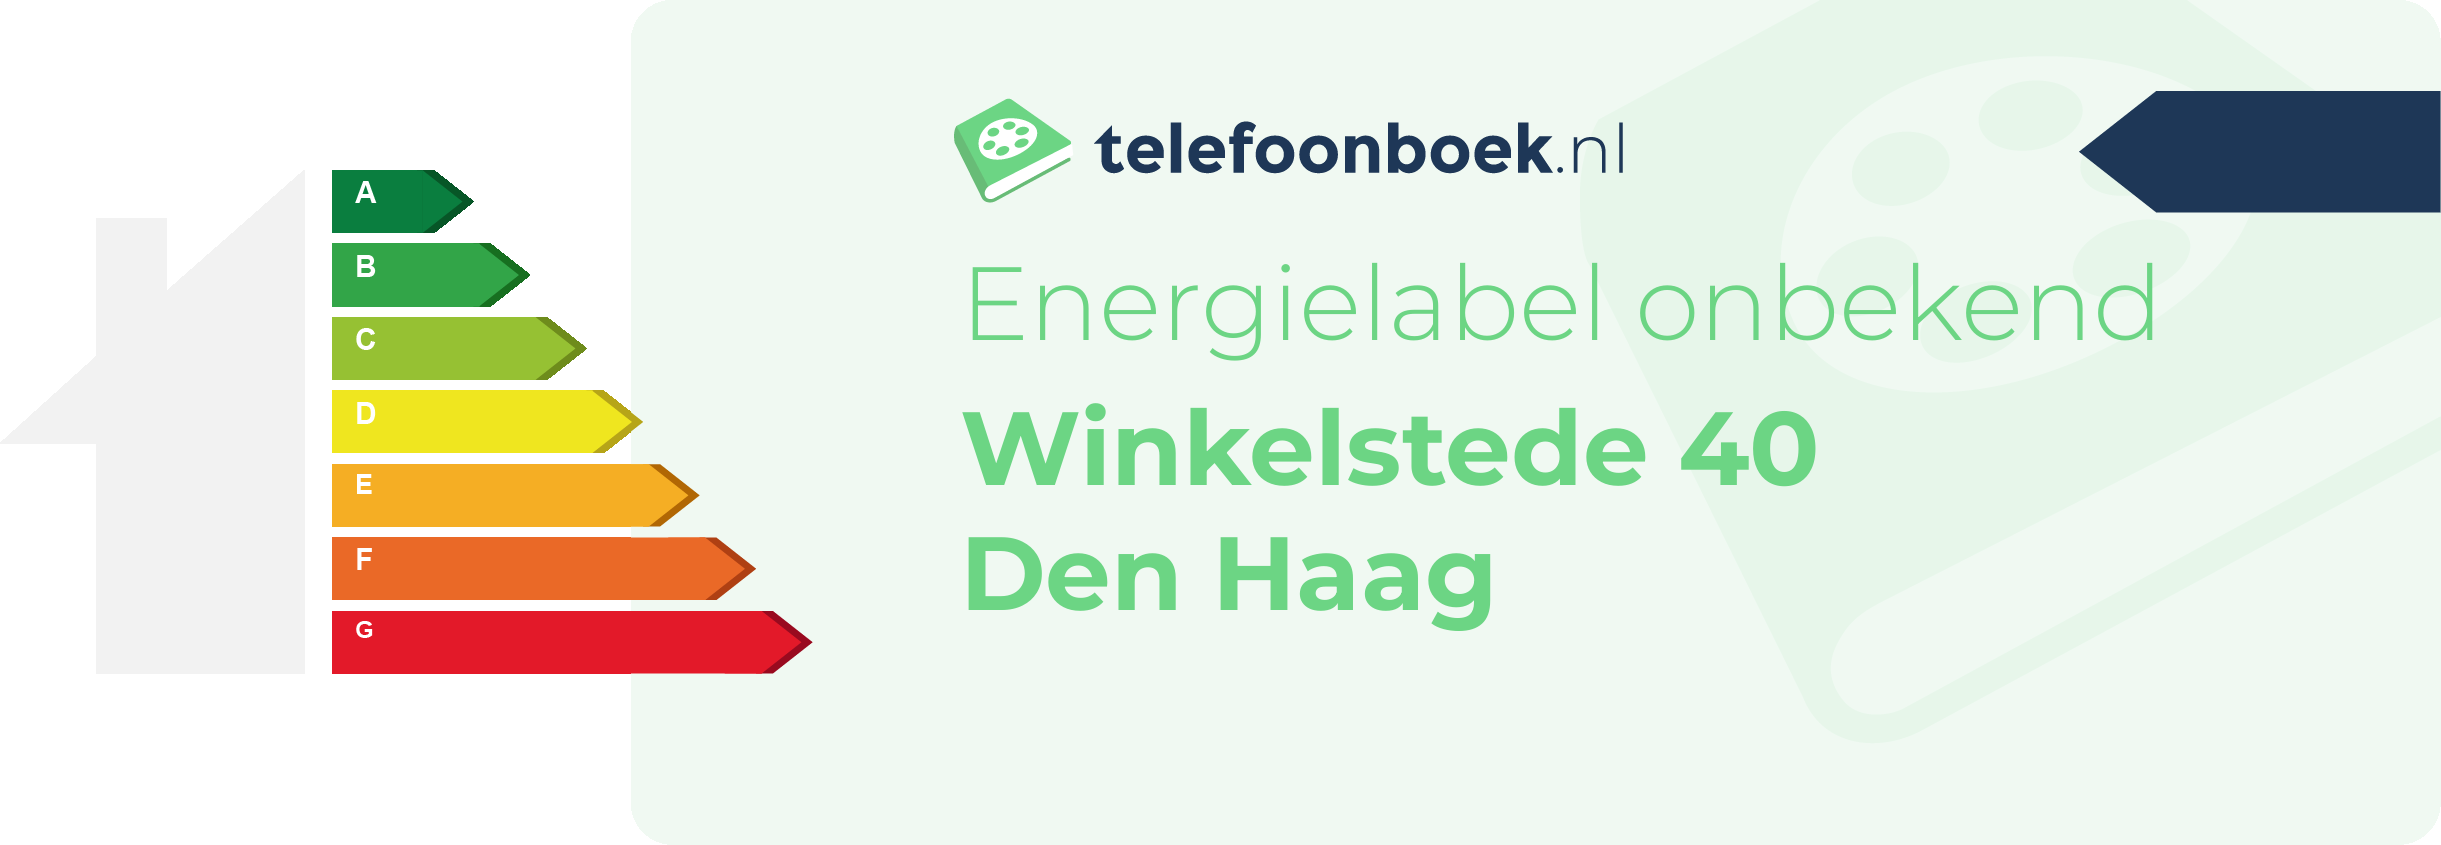 Energielabel Winkelstede 40 Den Haag